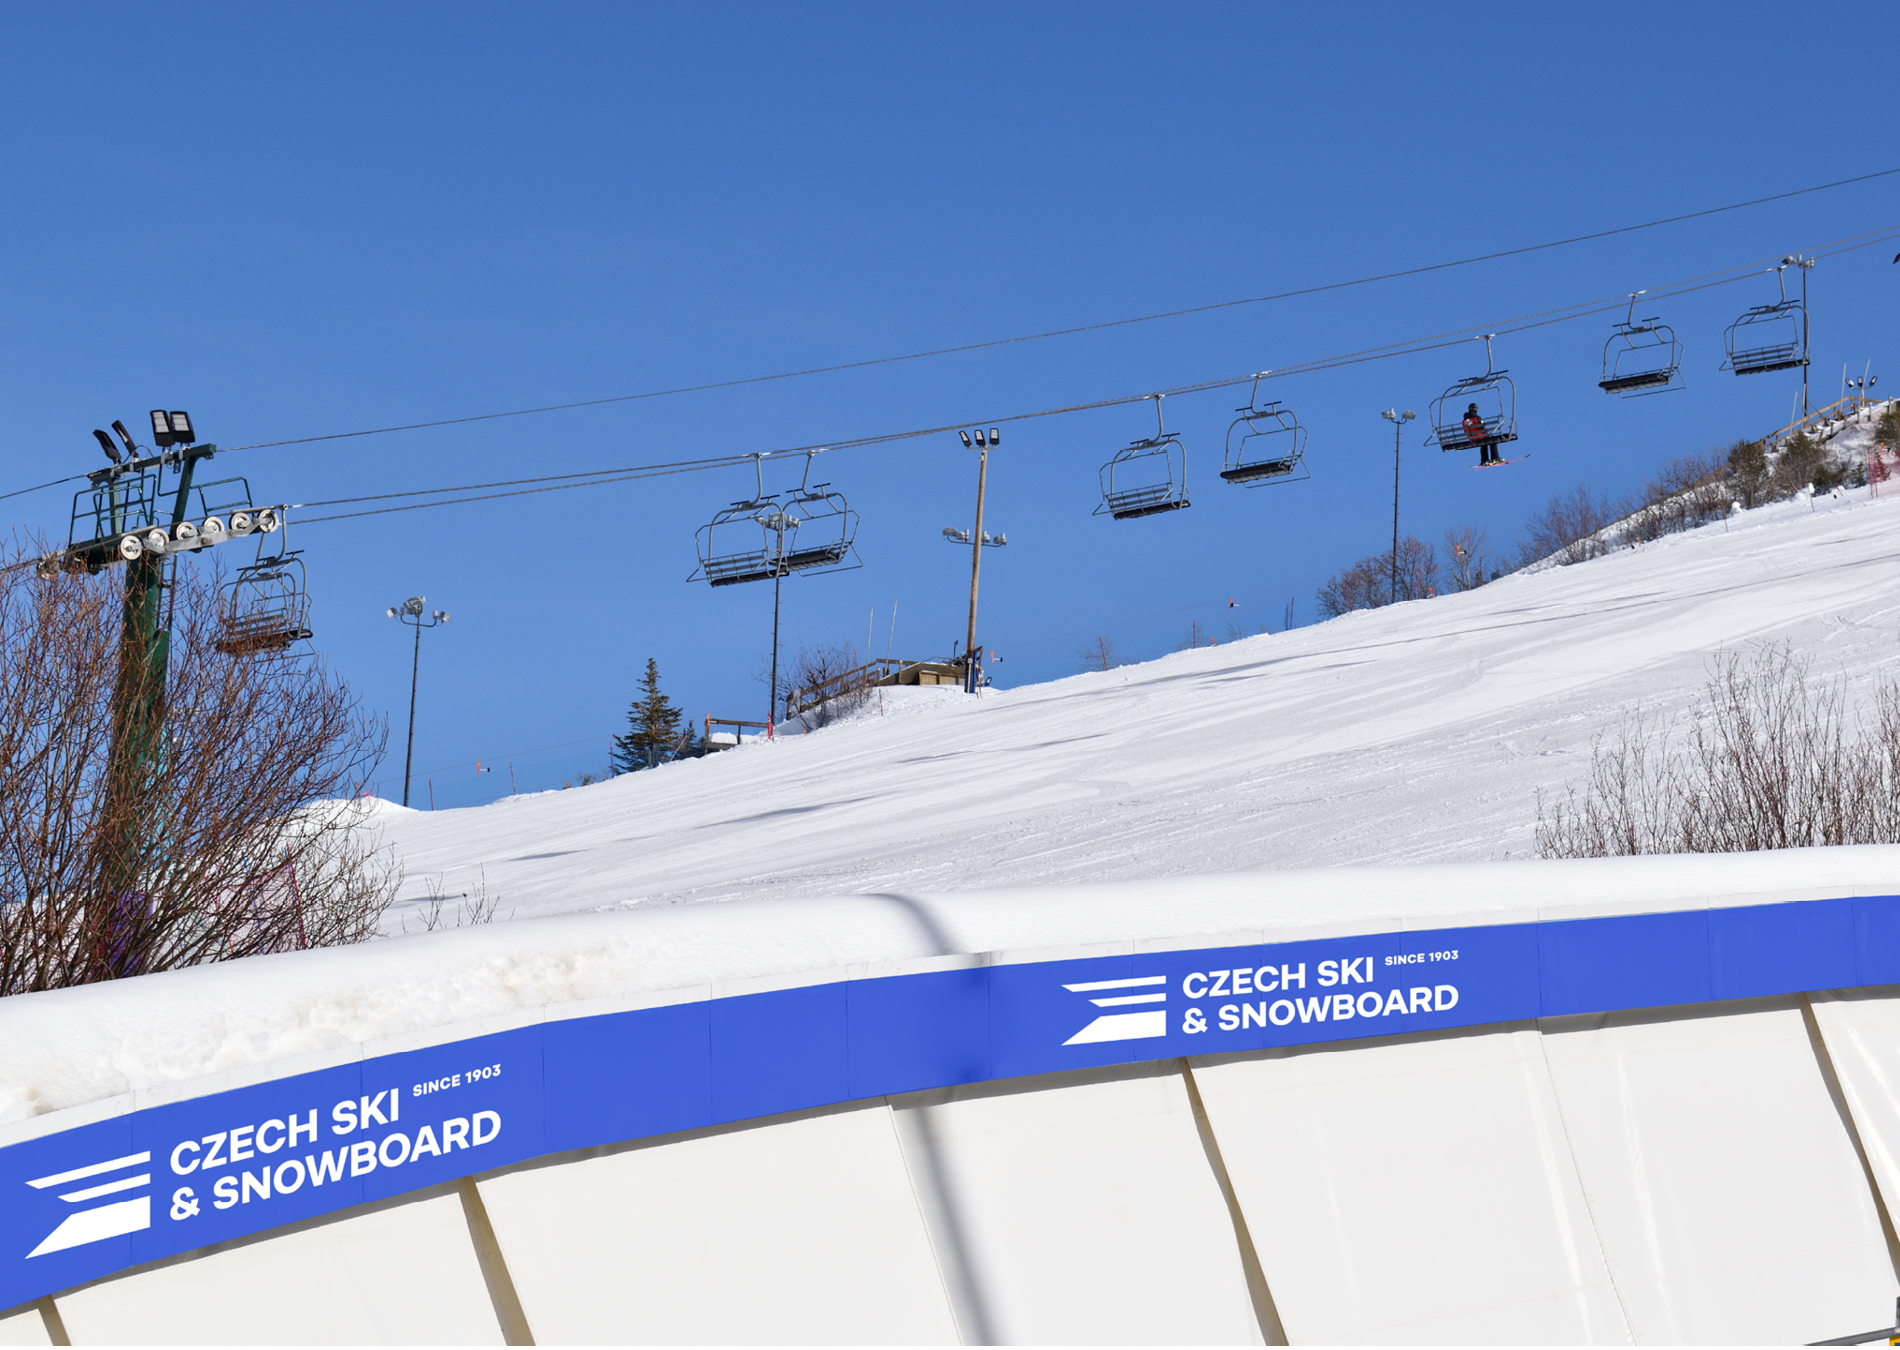 marketa_steinert_czech_ski_snowboard6